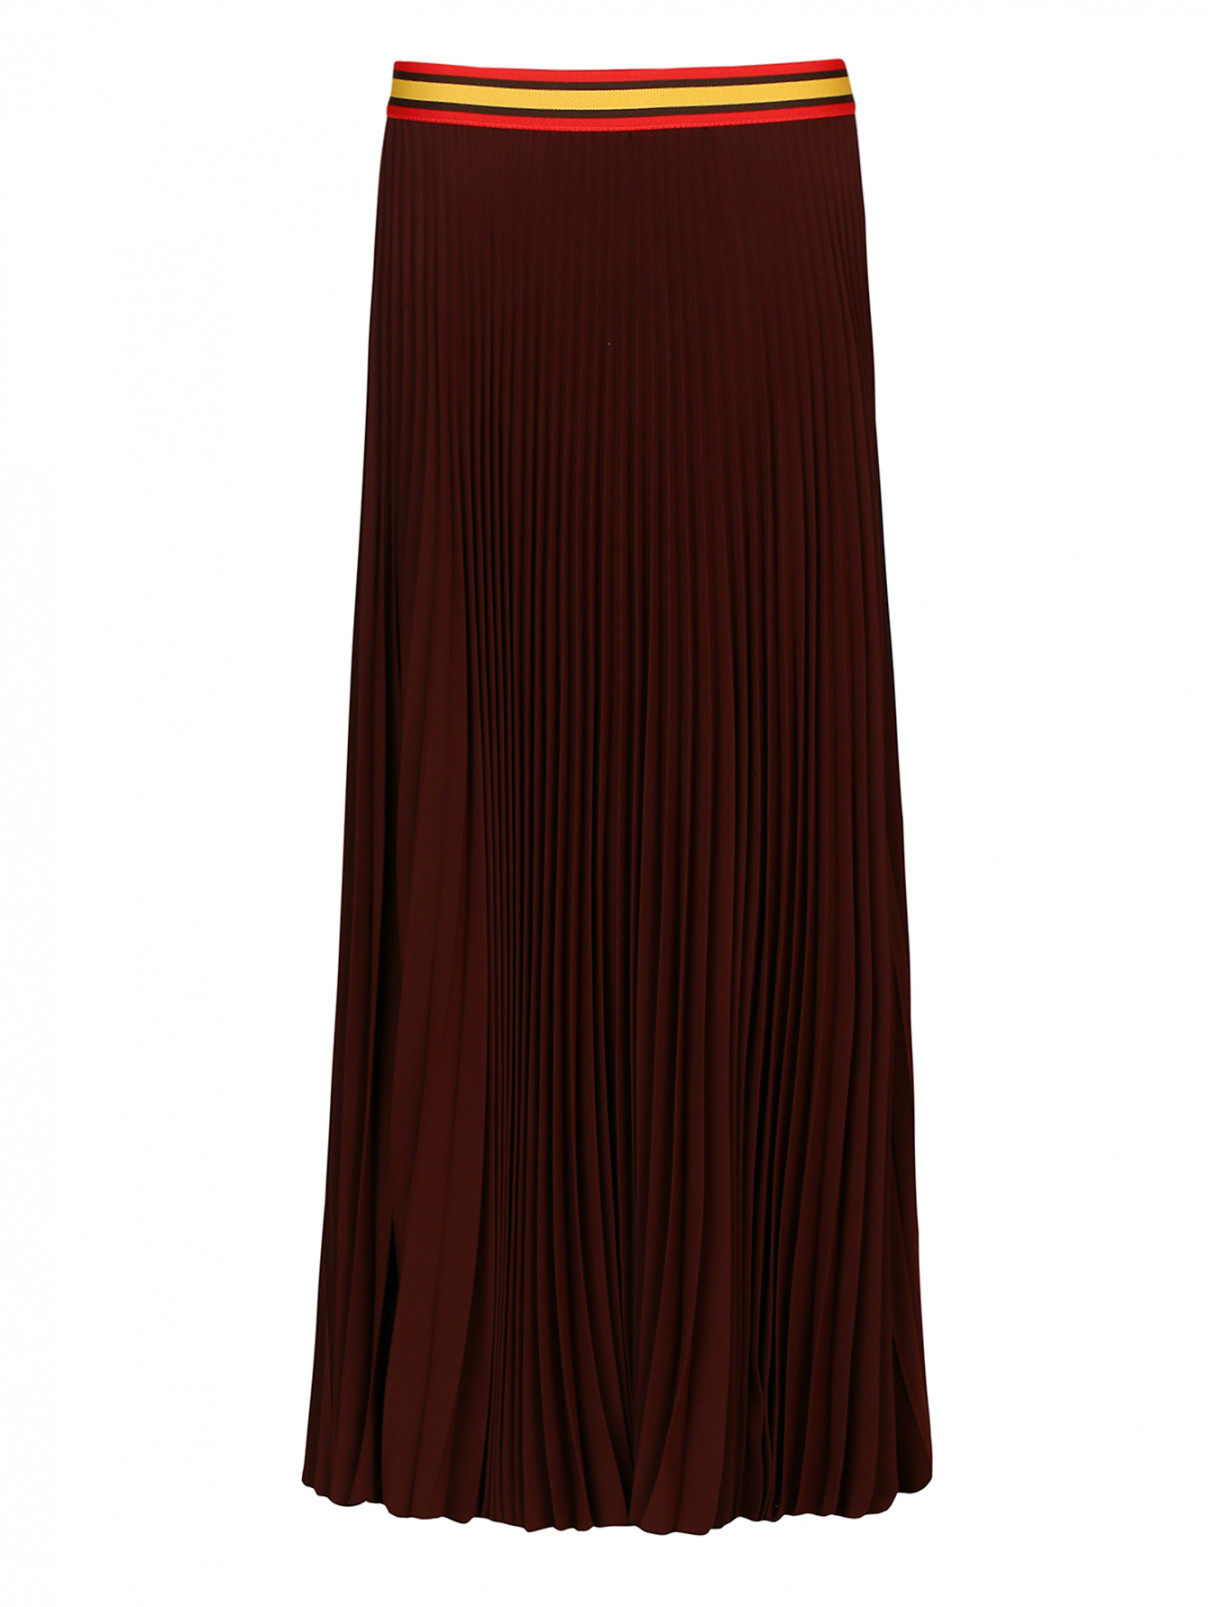 Плиссированная юбка-макси с контрастным поясом-резинкой Alberto Biani  –  Общий вид  – Цвет:  Коричневый